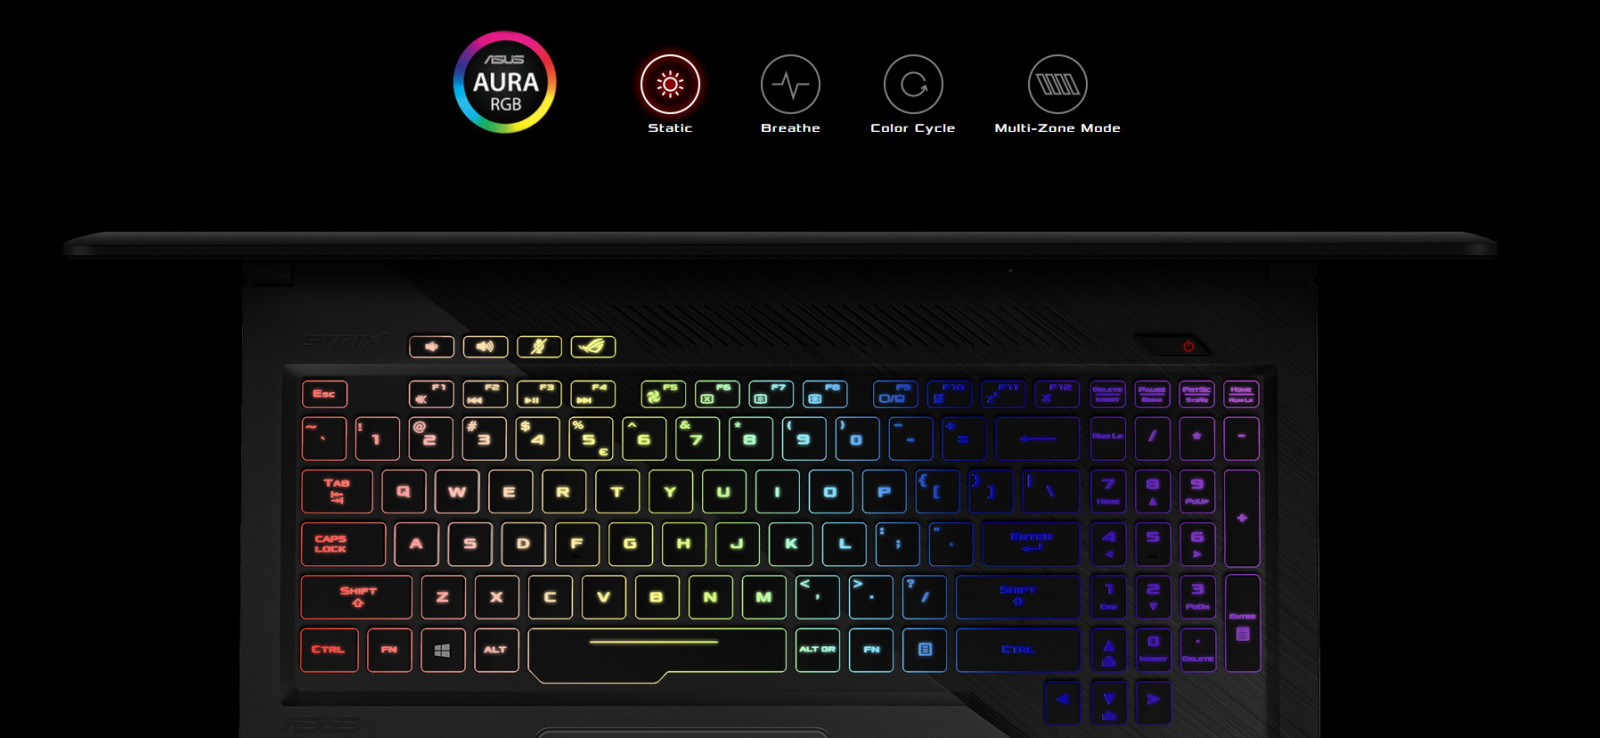 rbg подсветка клавиатуры у игрового ASUS Strix GL503VD